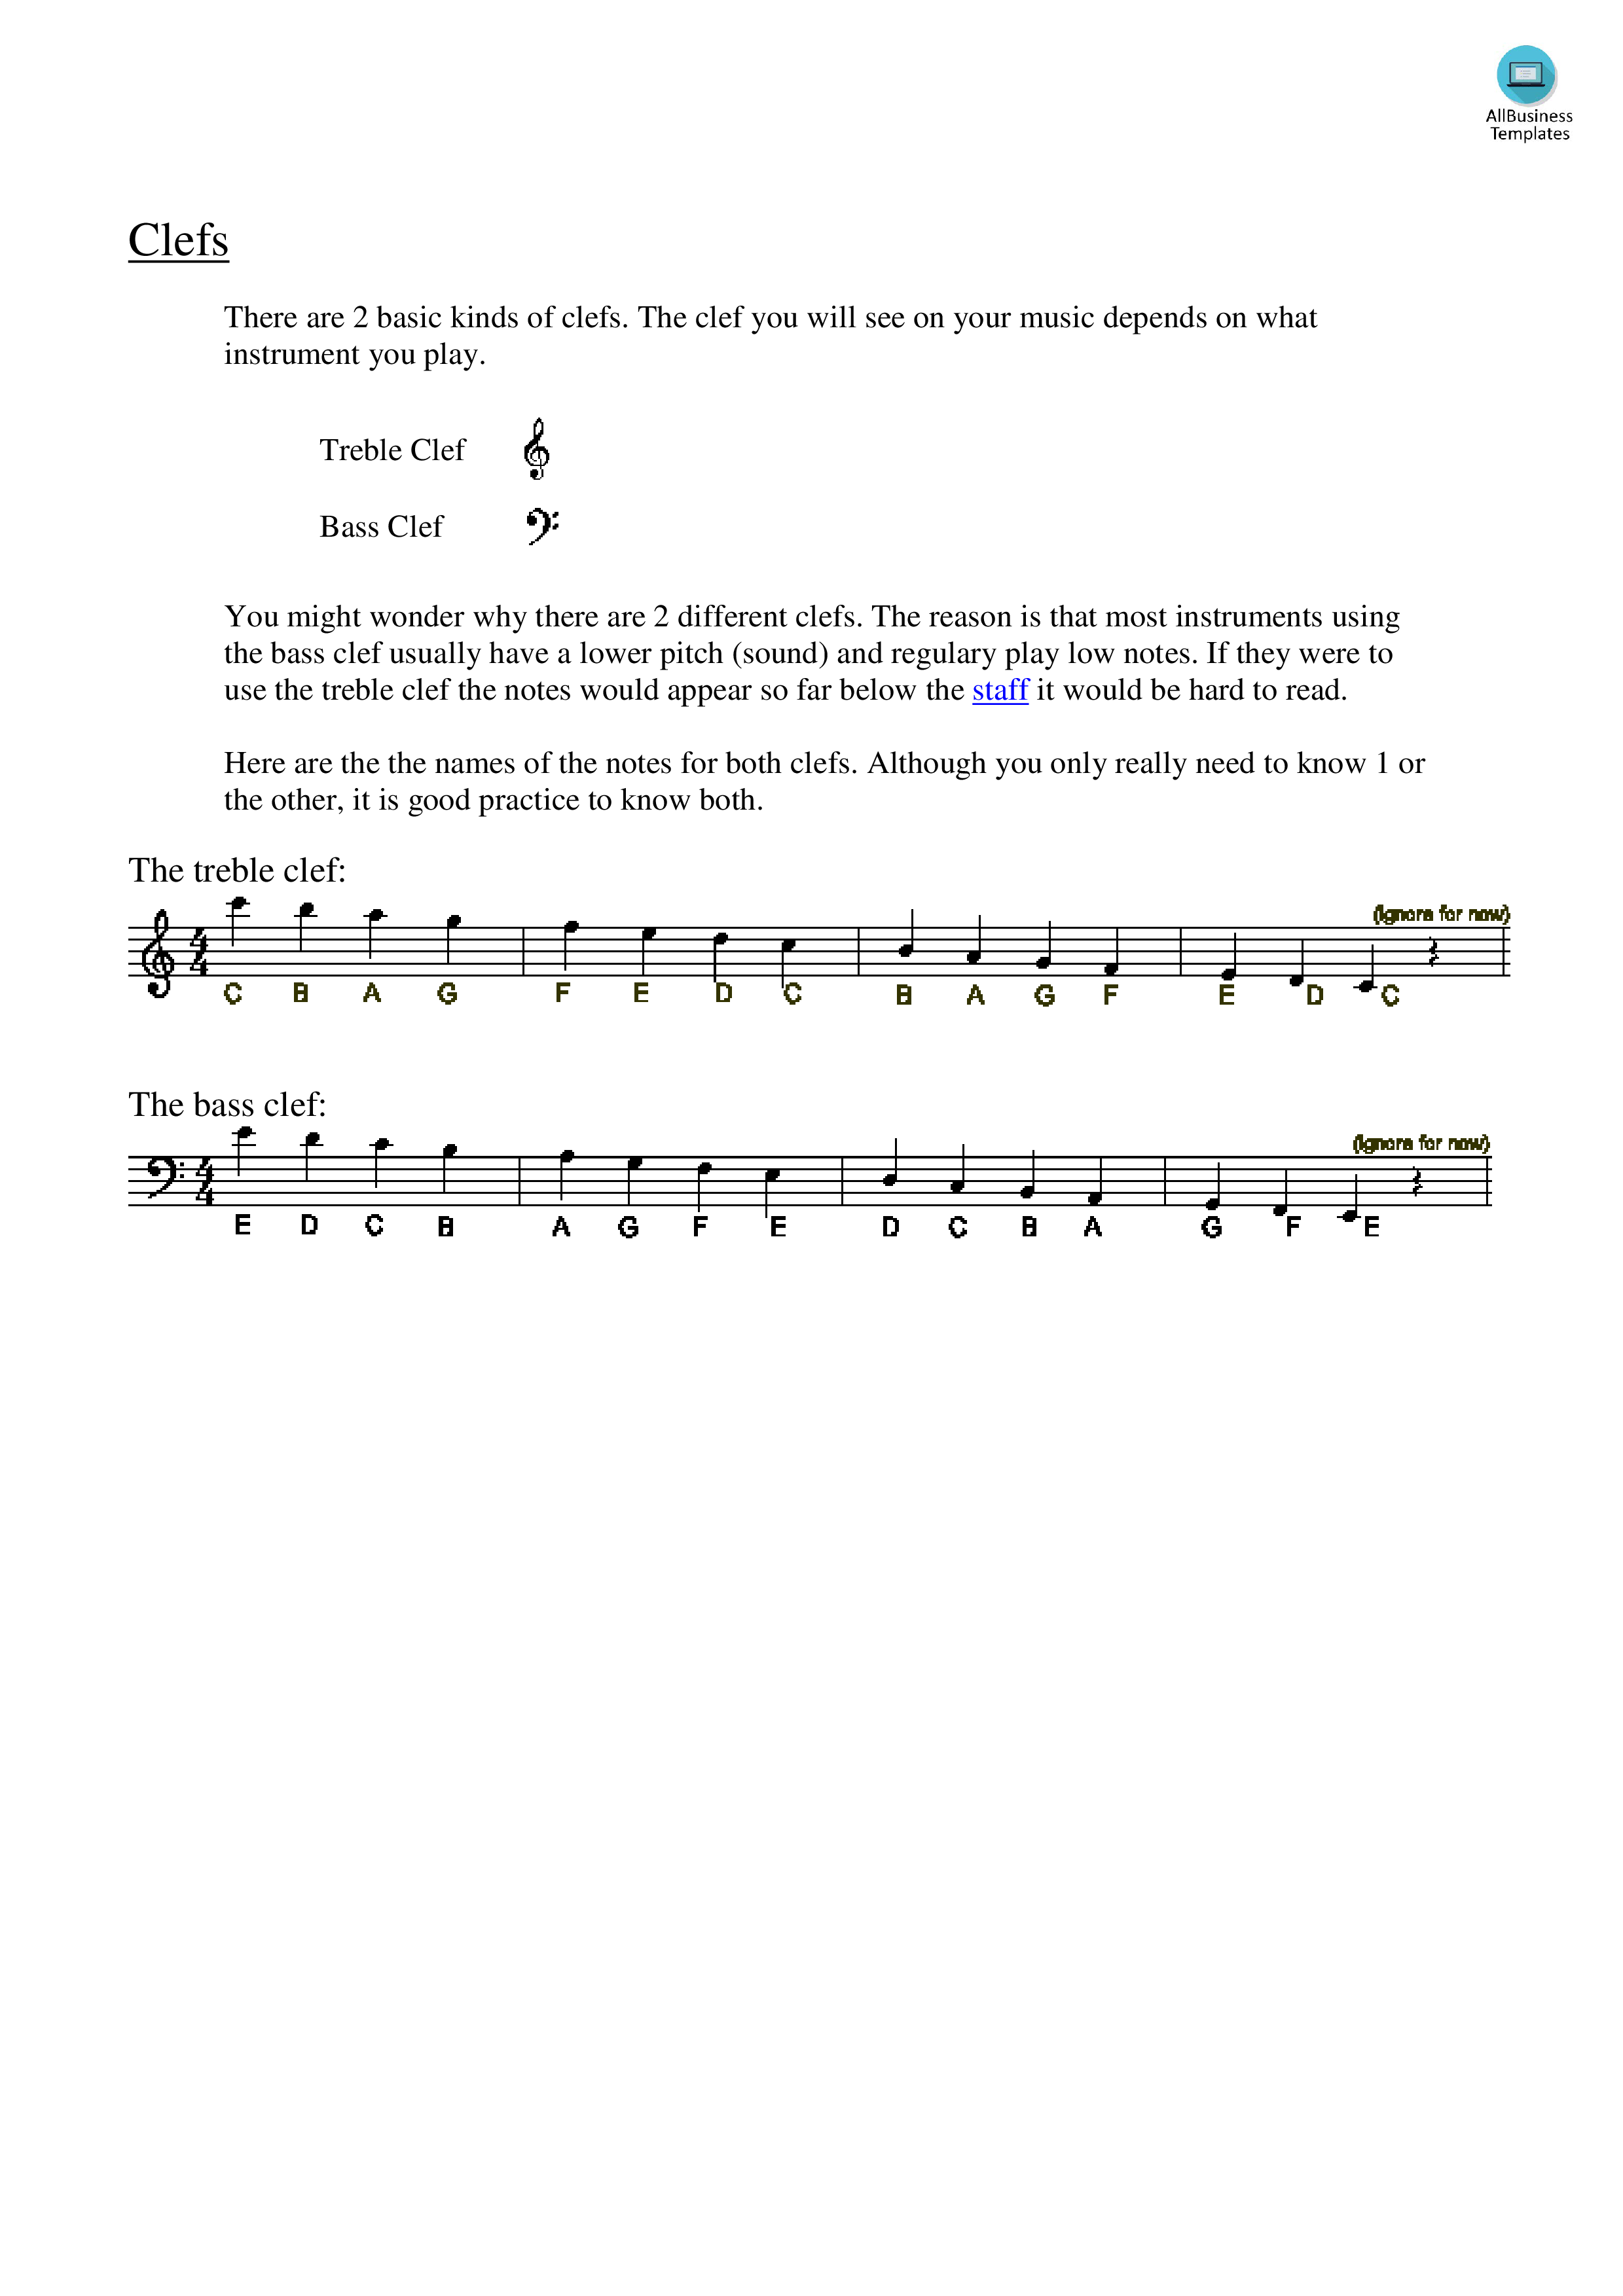 piano clef notes chart voorbeeld afbeelding 